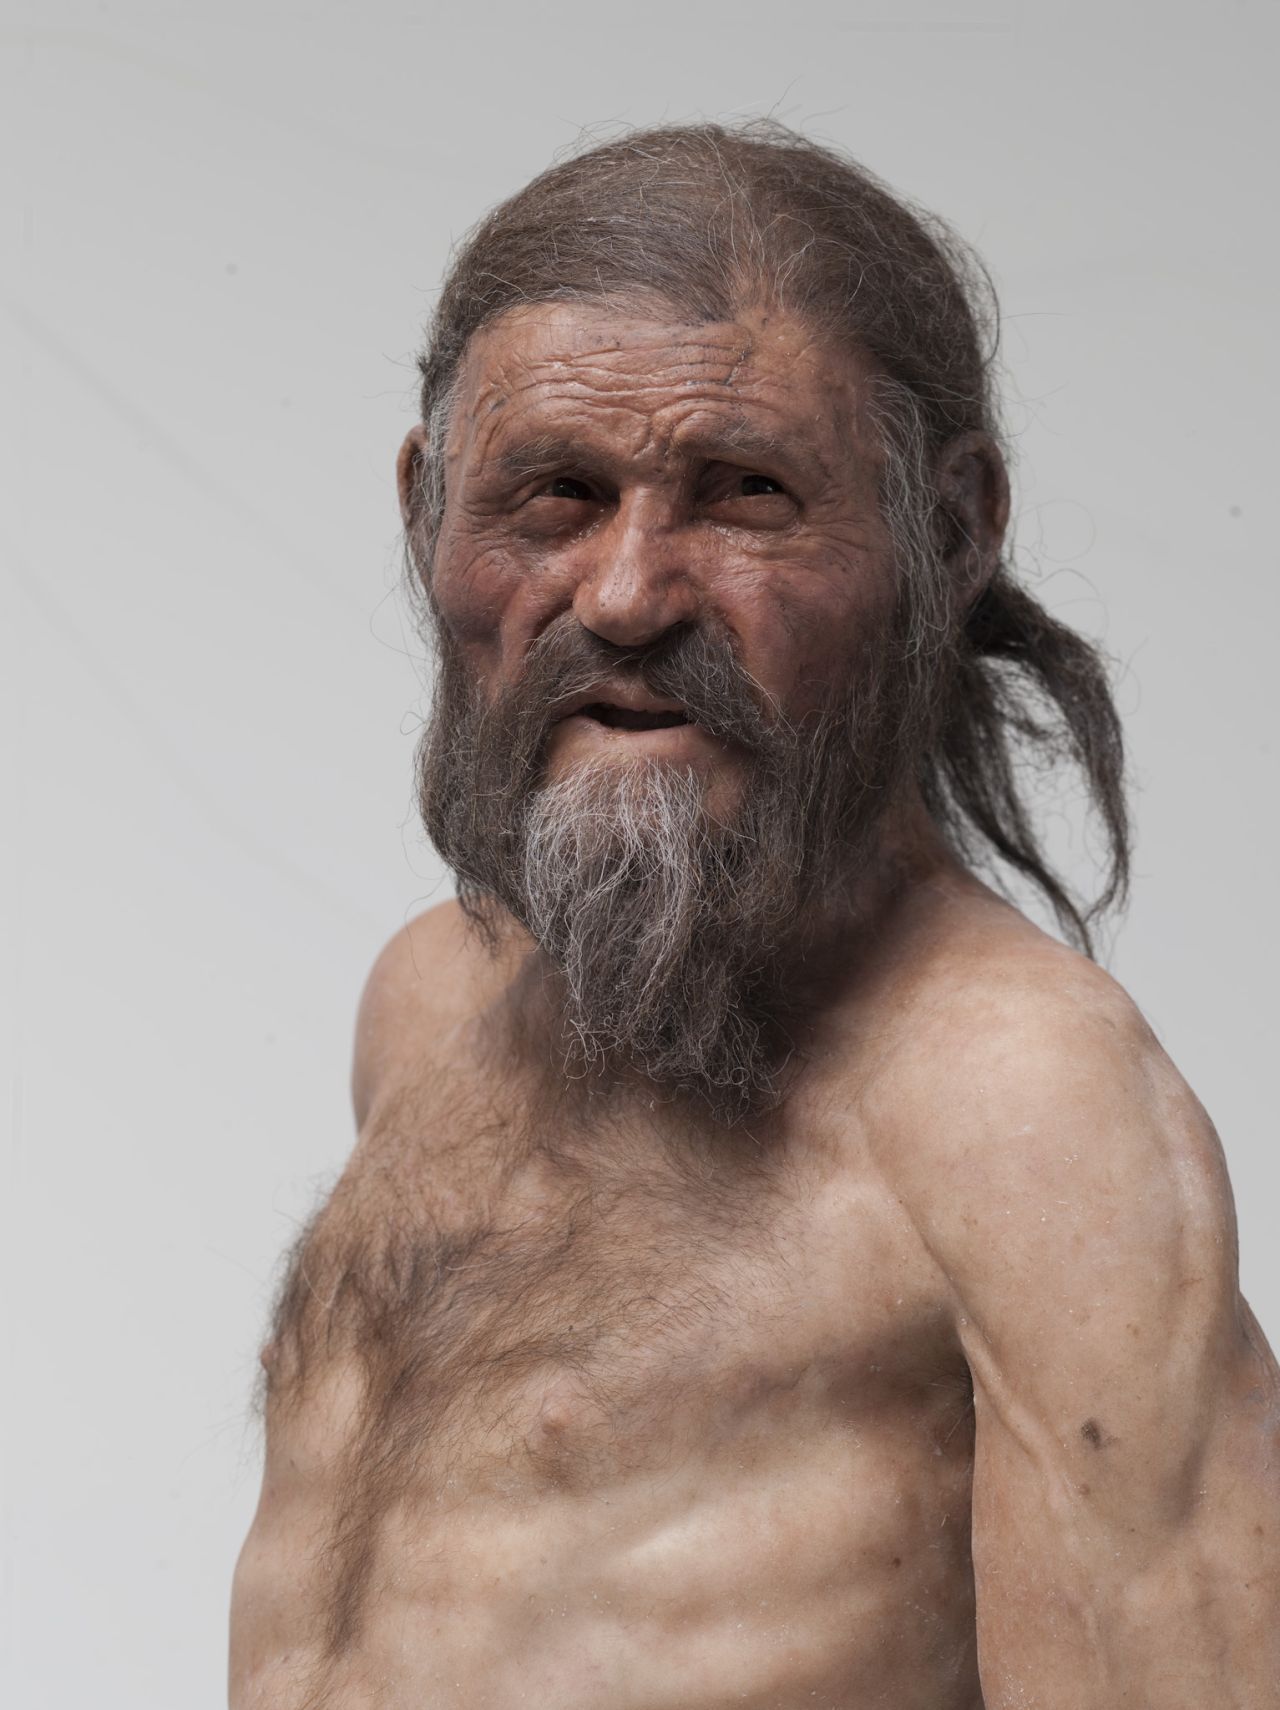 Wissenschaftler:innen gingen lange Zeit davon aus, Ötzi habe helle Haut und dichten Haarwuchs gehabt.